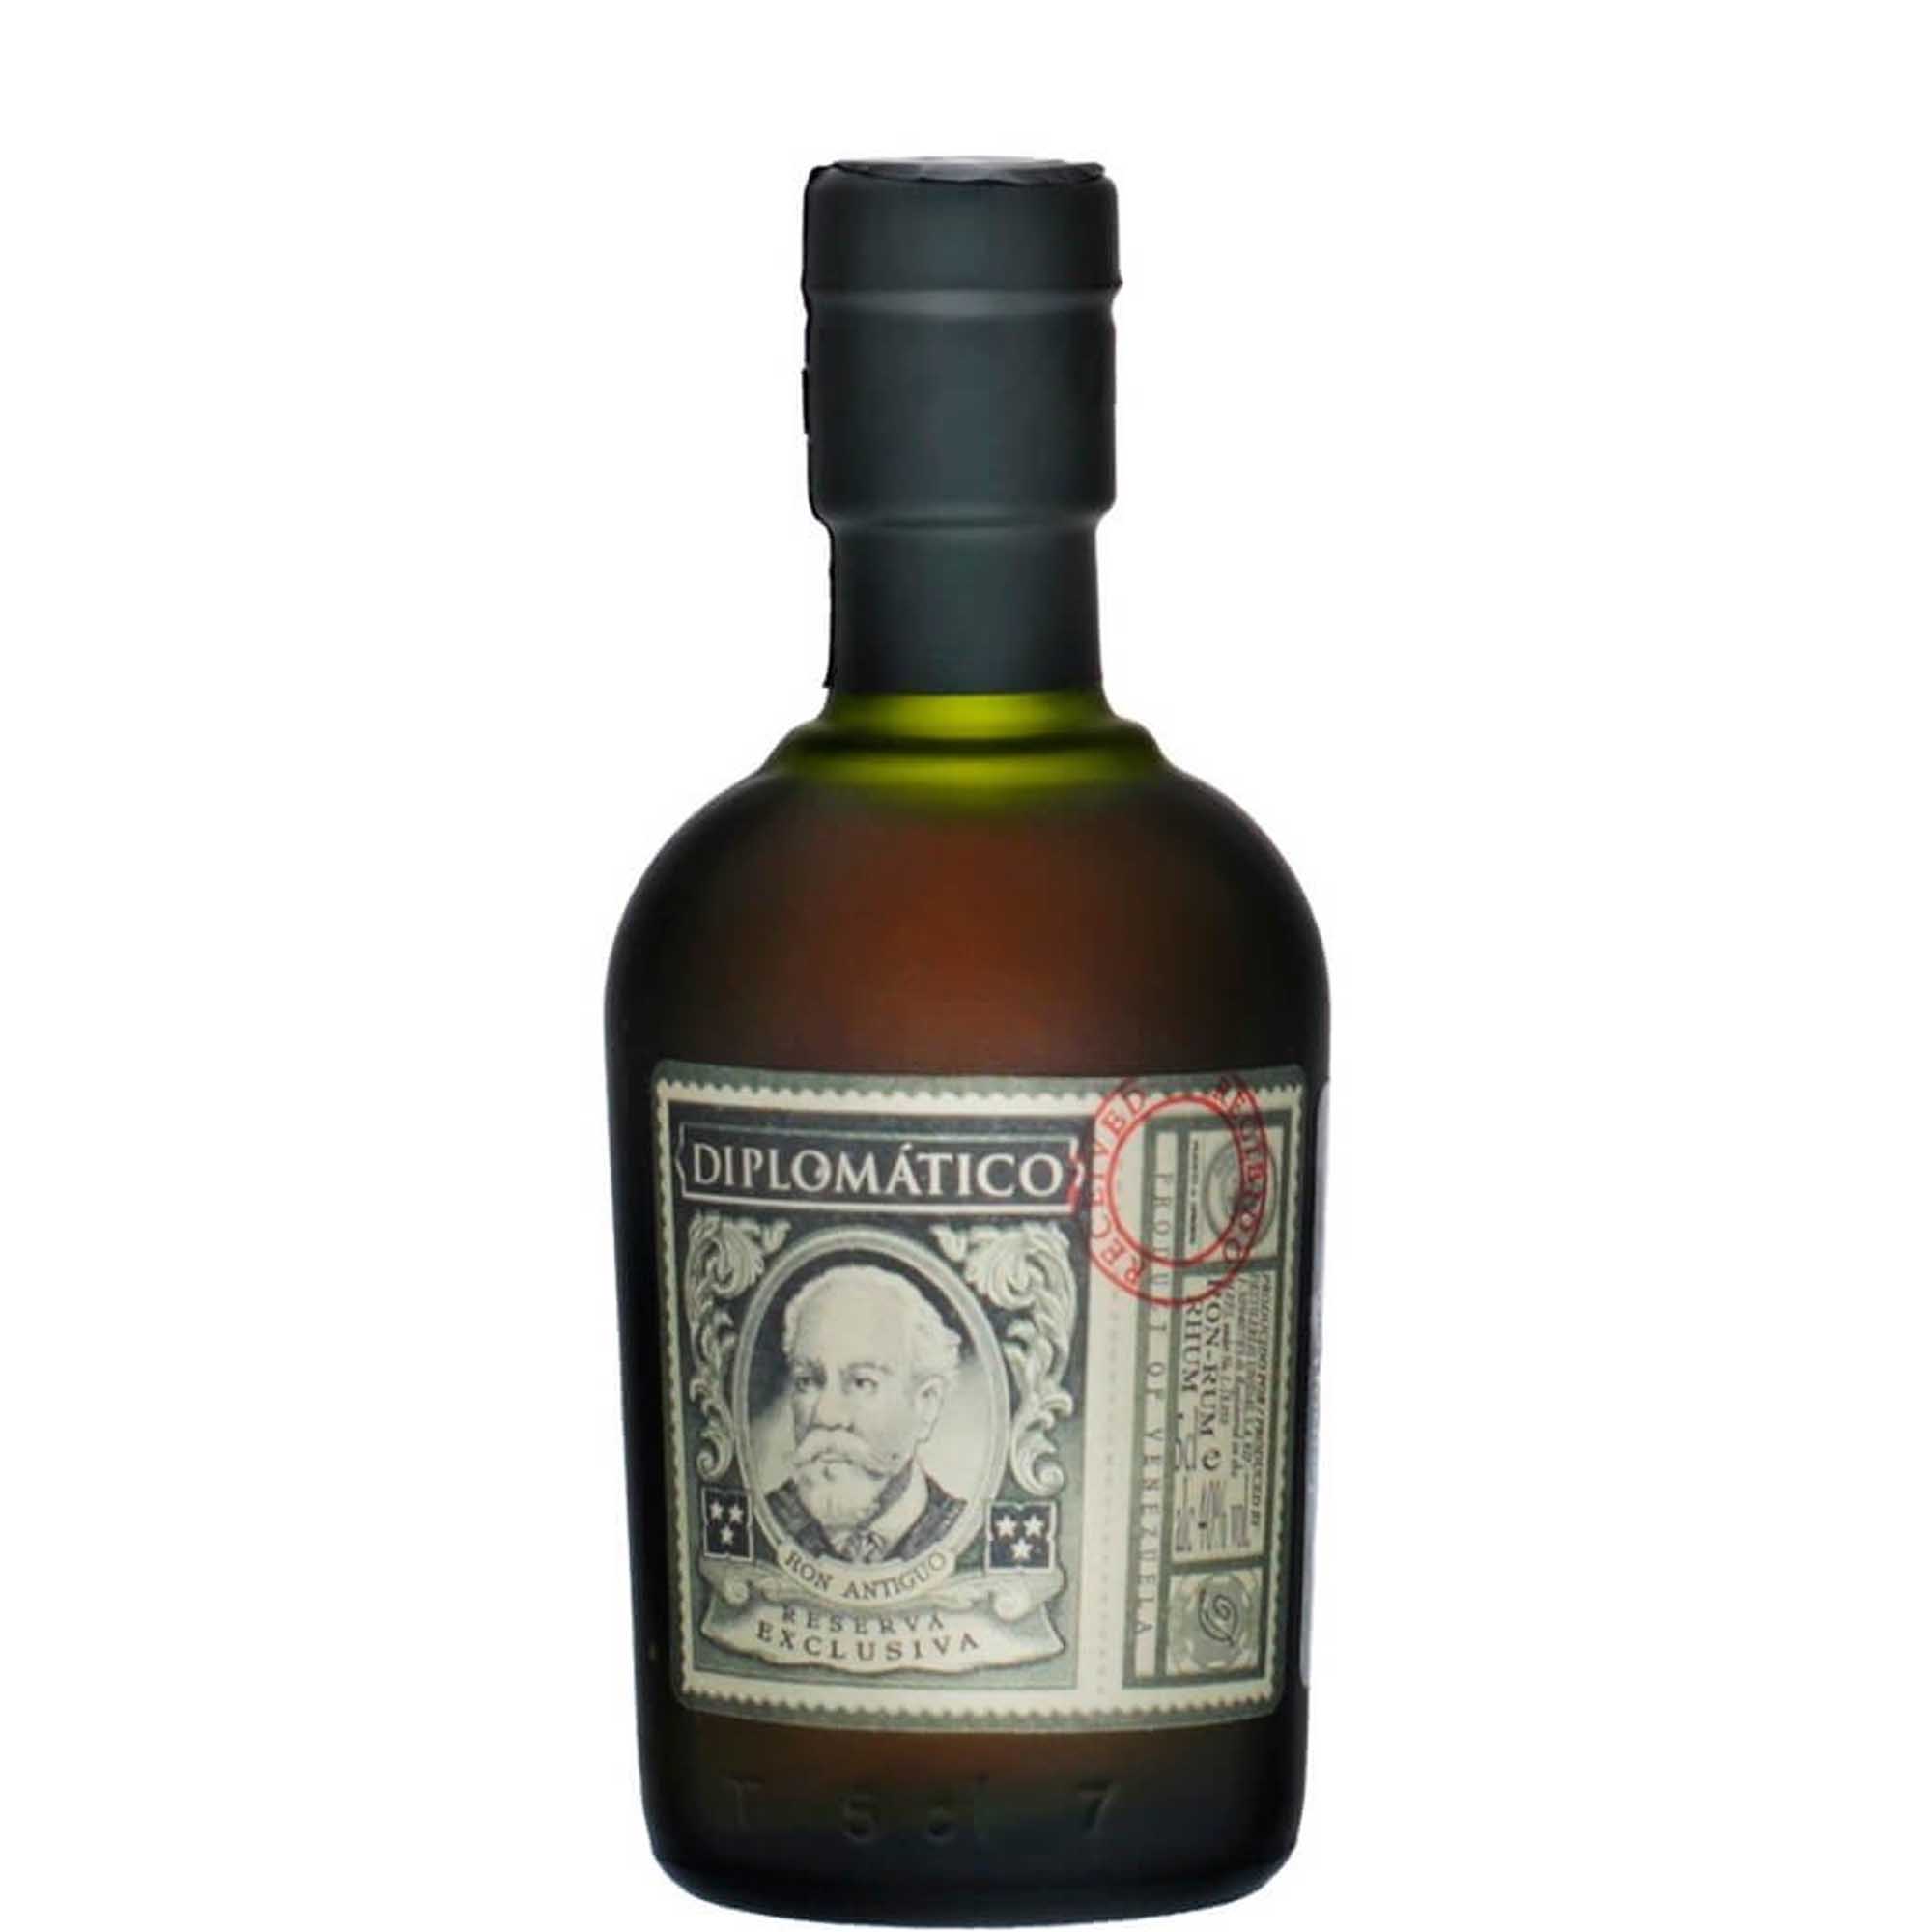 Diplomatico Reserva Exclusiva Rum Miniature 5cl